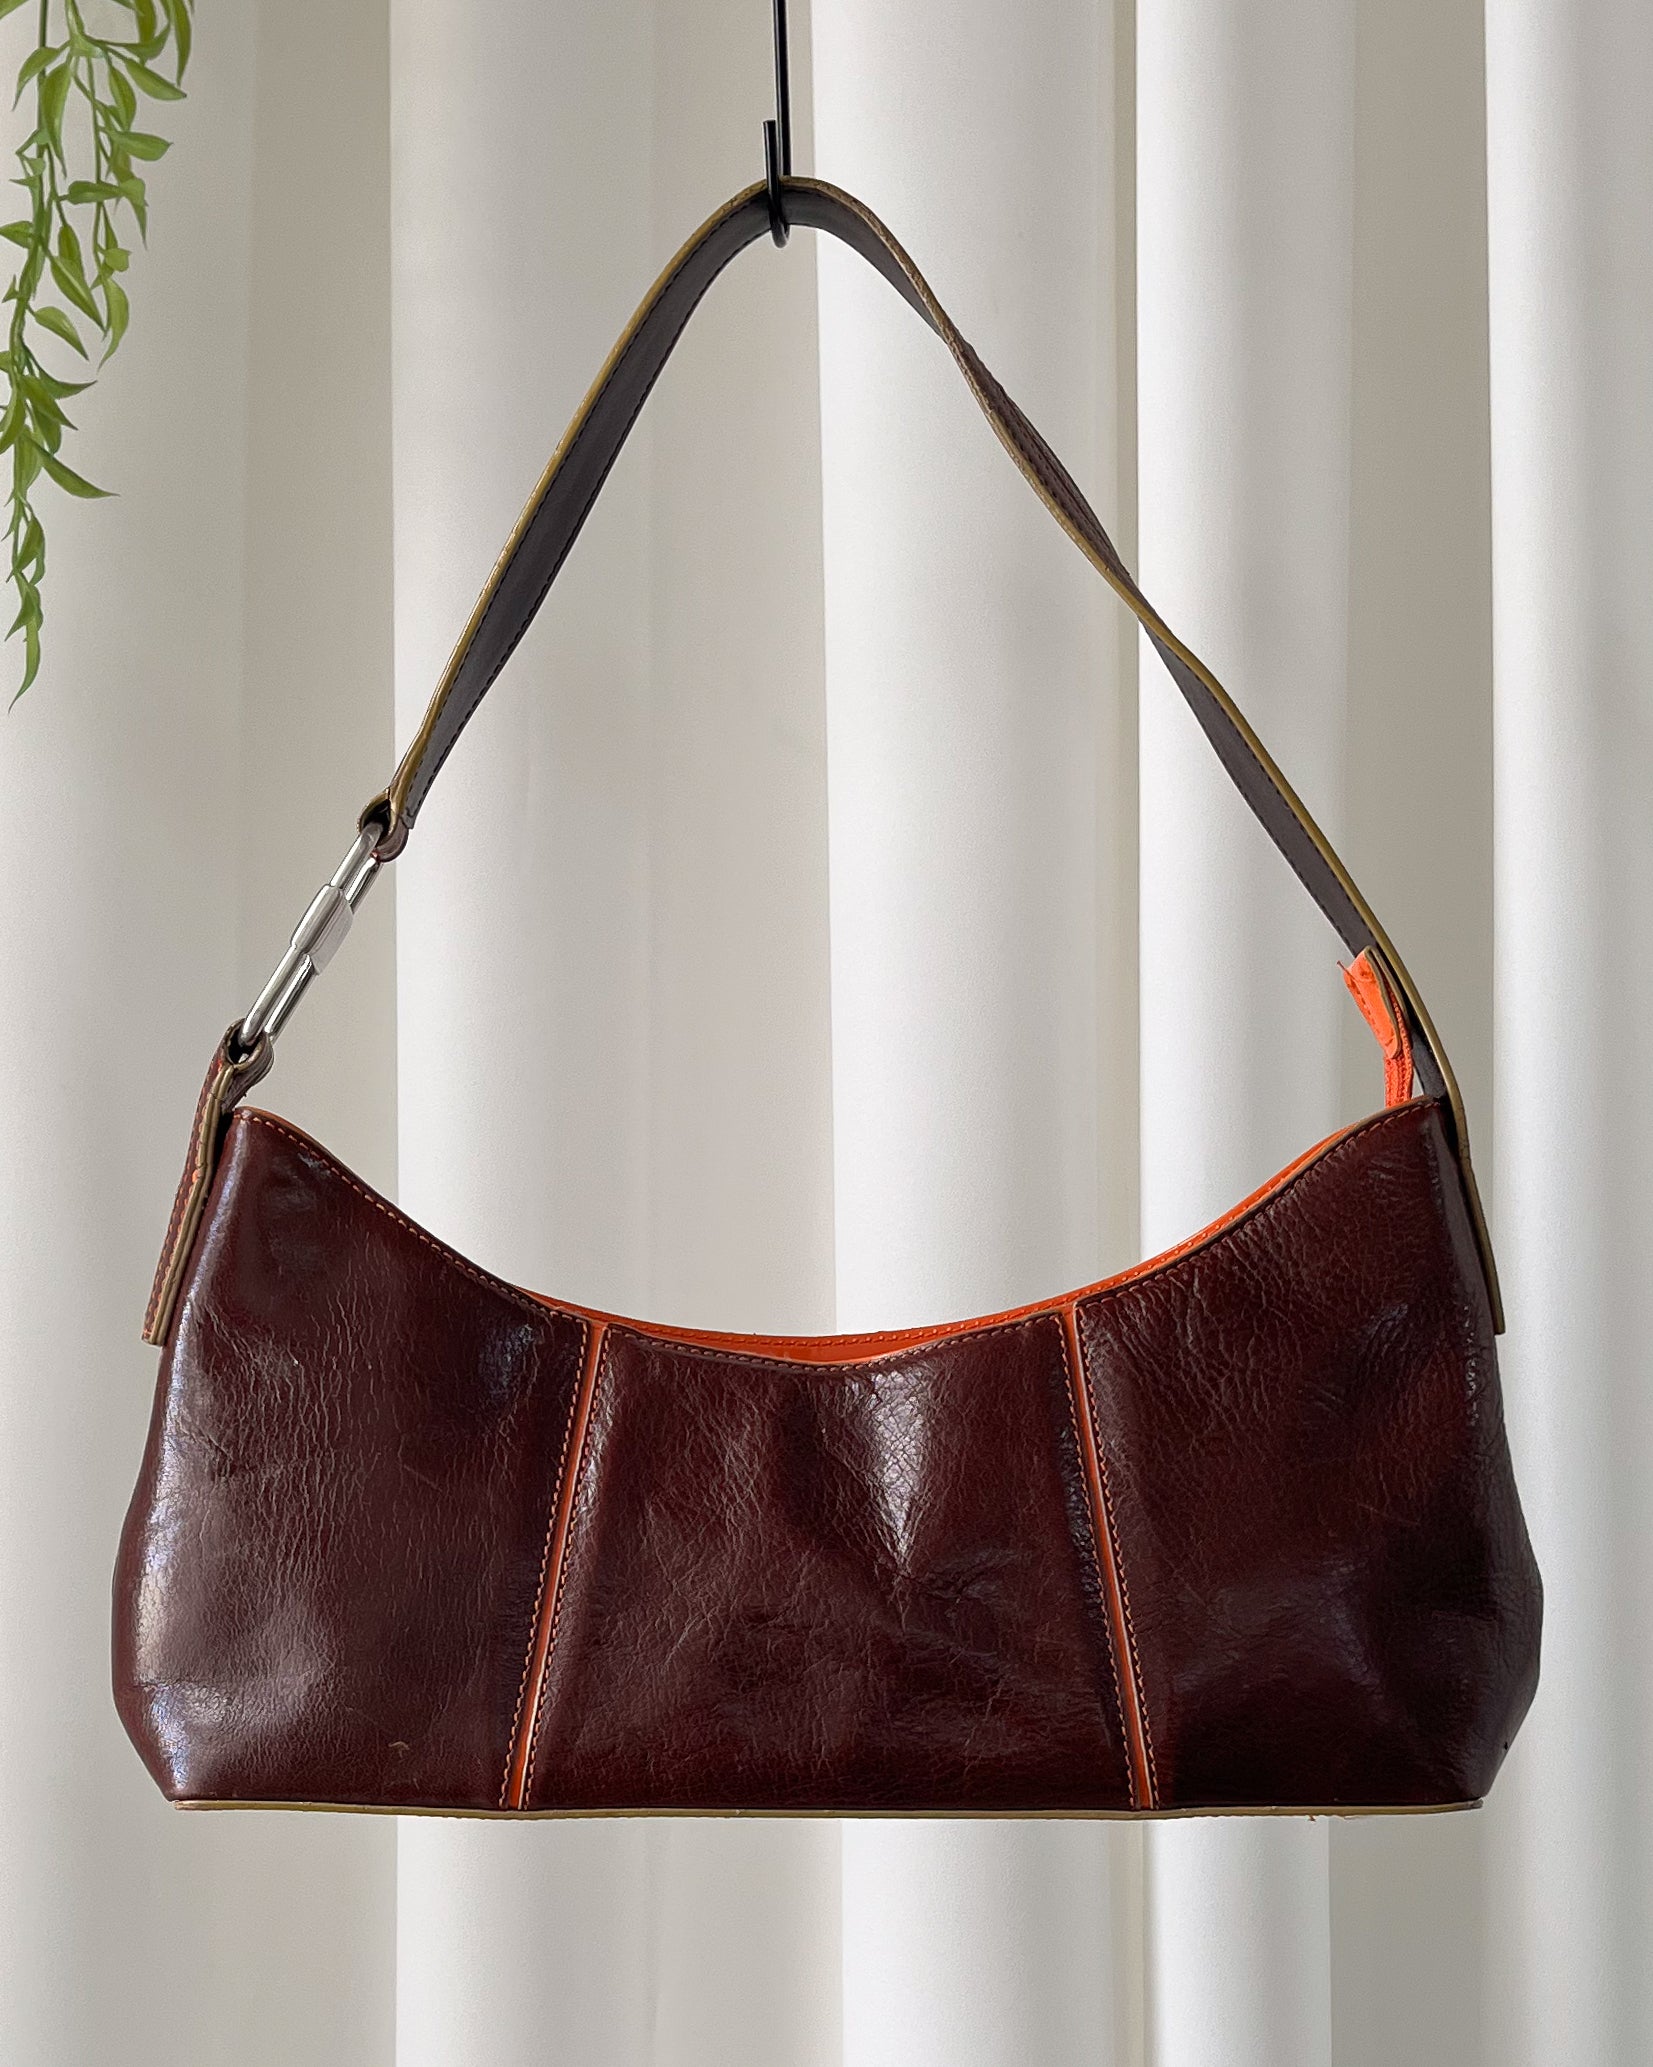 Vintage Y2k Style Patent Leather Shoulder Bag